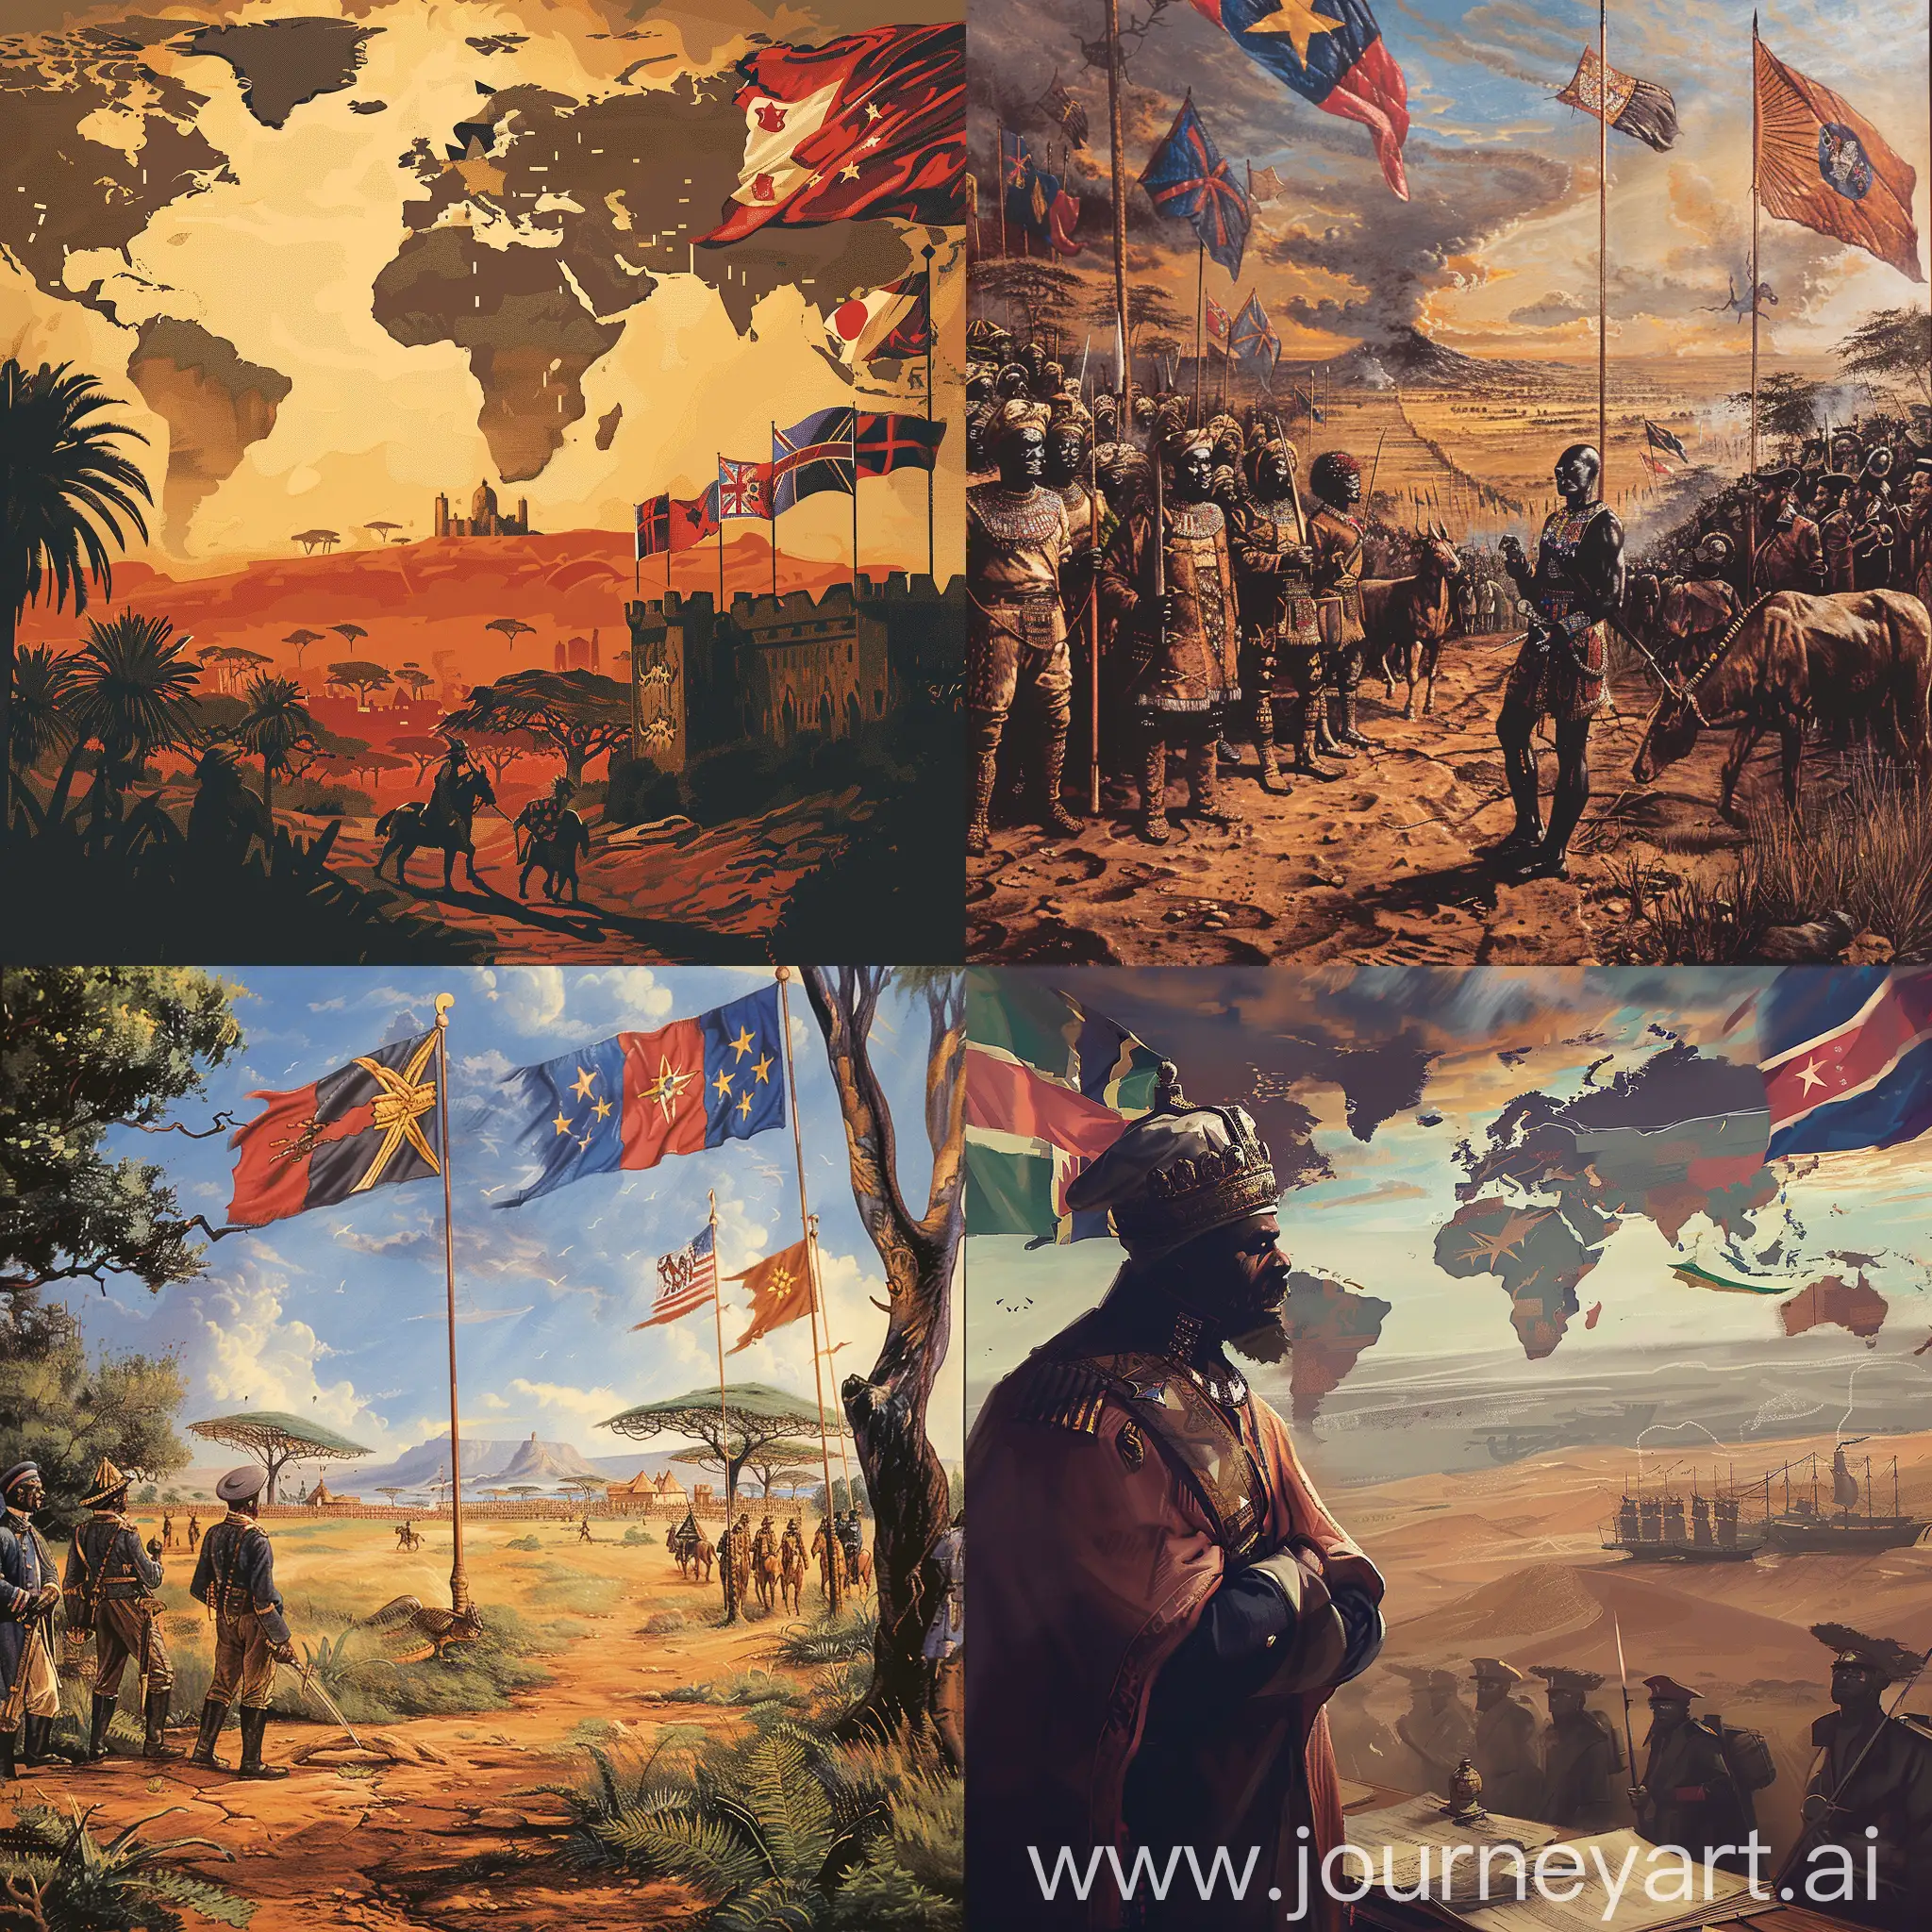 背景为19世纪的非洲大地，远处是欧洲列强的旗帜在飘扬